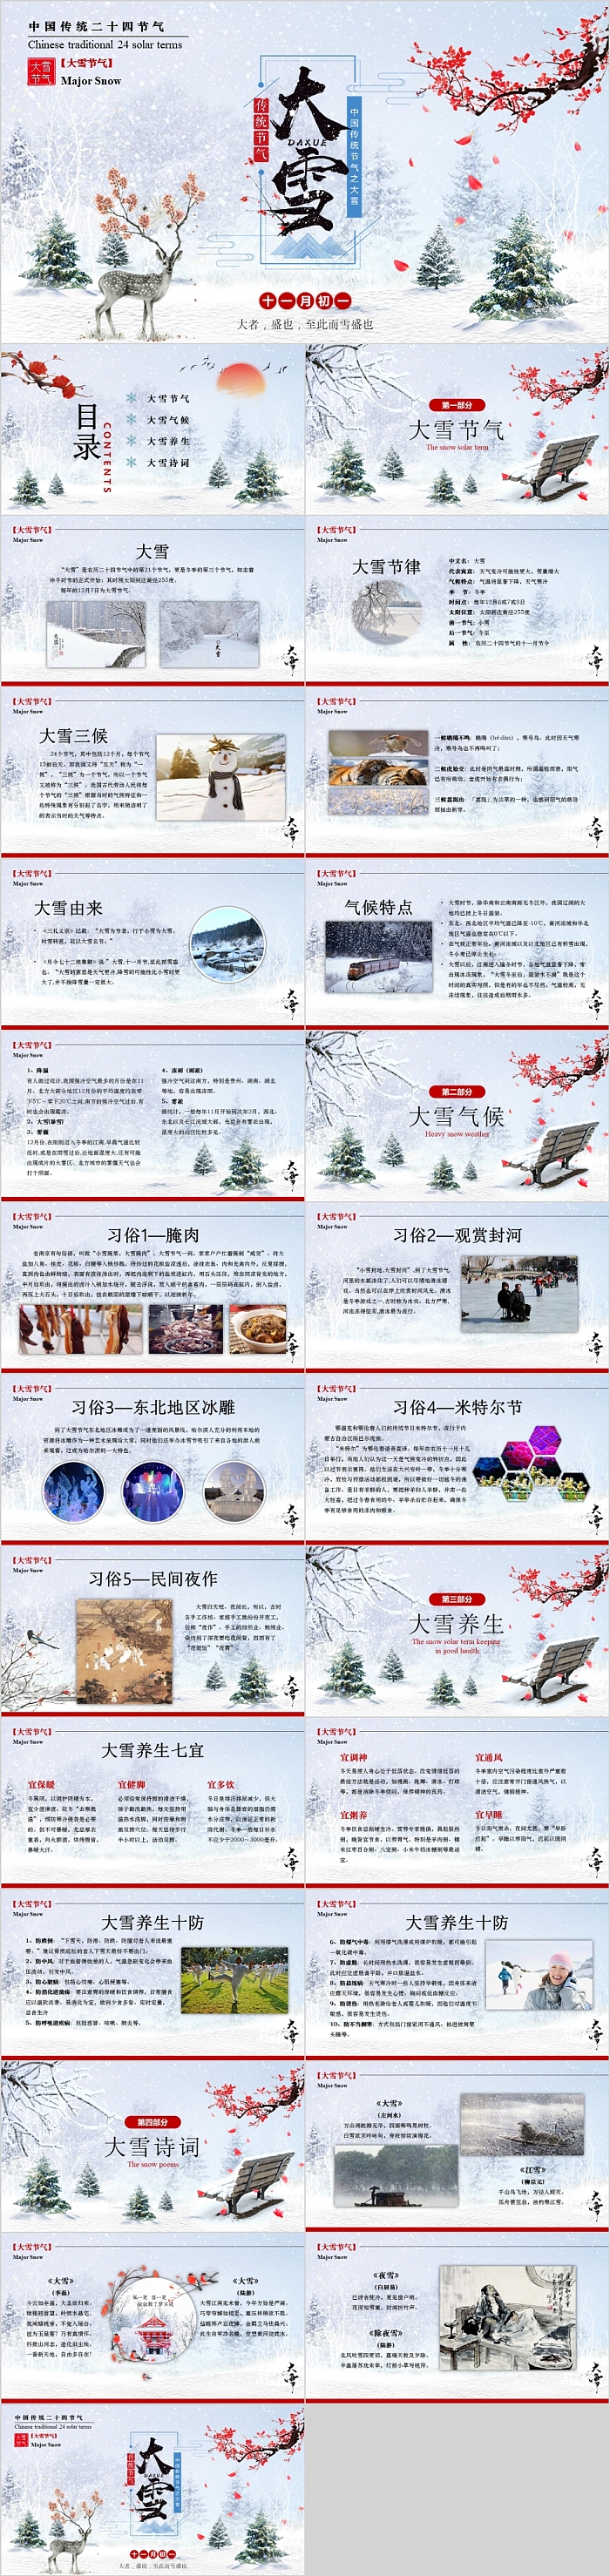 中国传统节气之大雪习俗